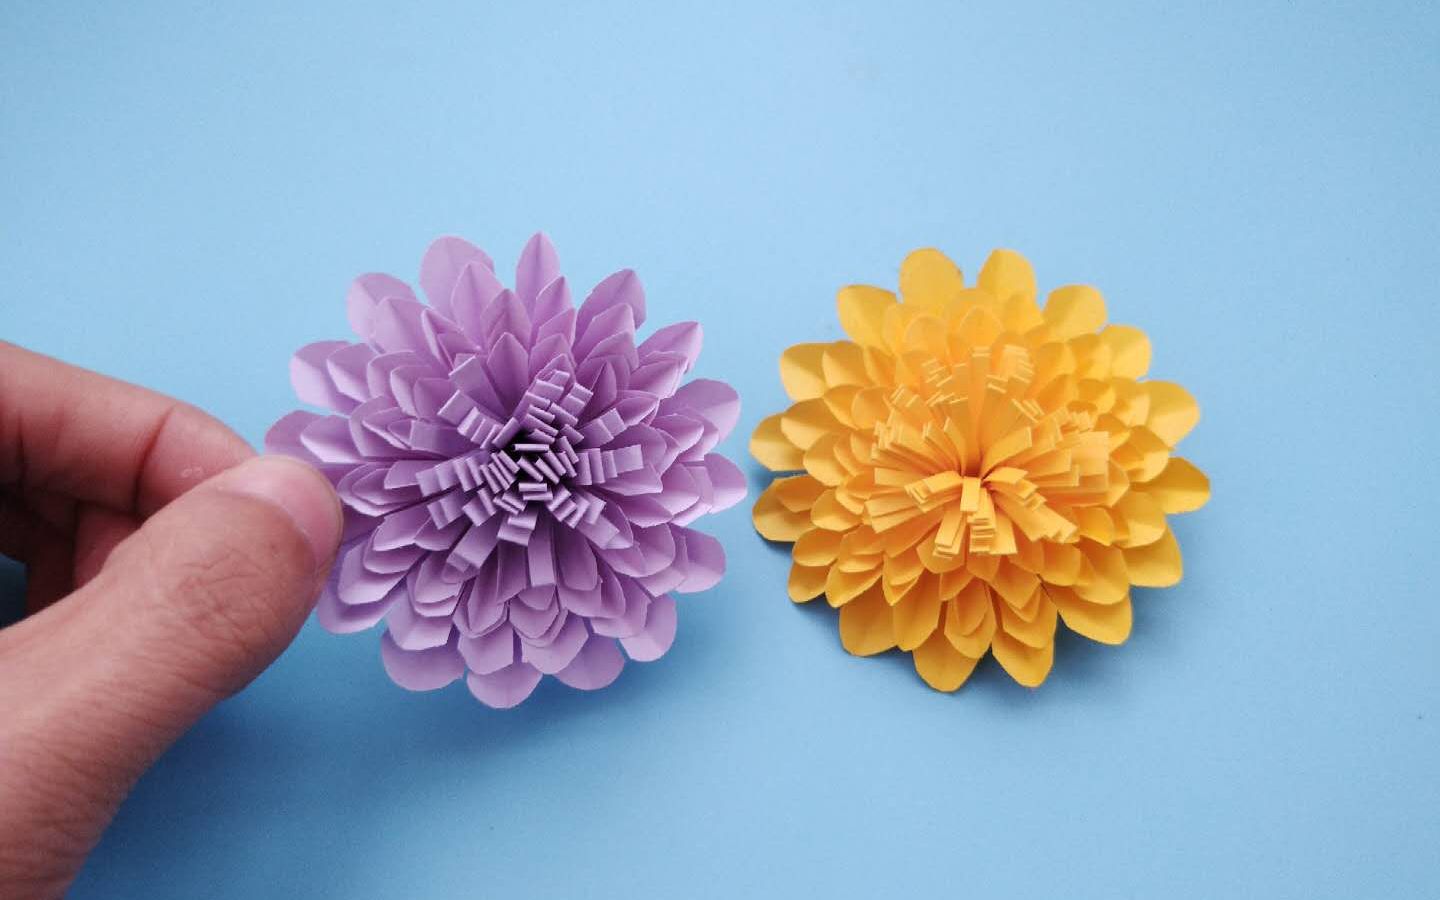 非常漂亮的立体菊花折纸,像真花一样逼真,手工diy折纸视频教程